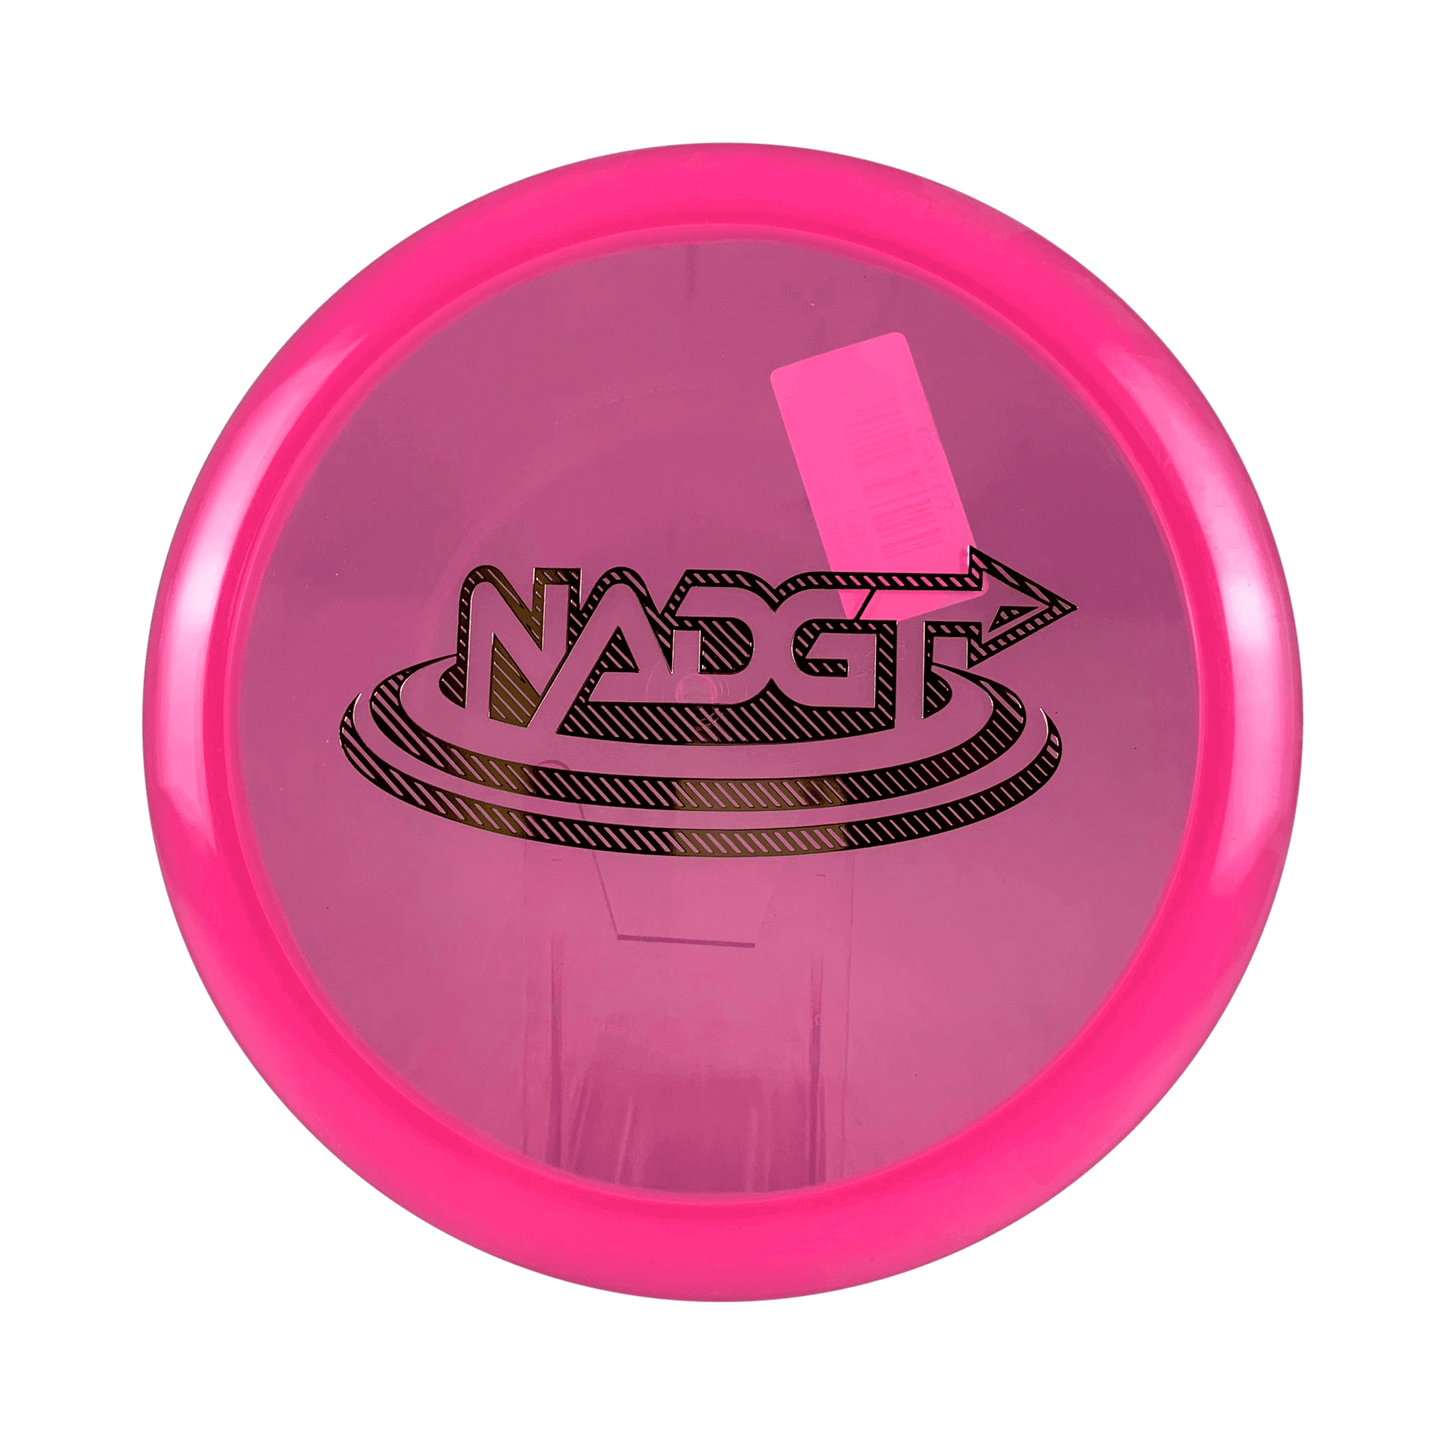 VIP Glimmer Hatchet - NADGT National Championship 2022 Disc Westside Discs 